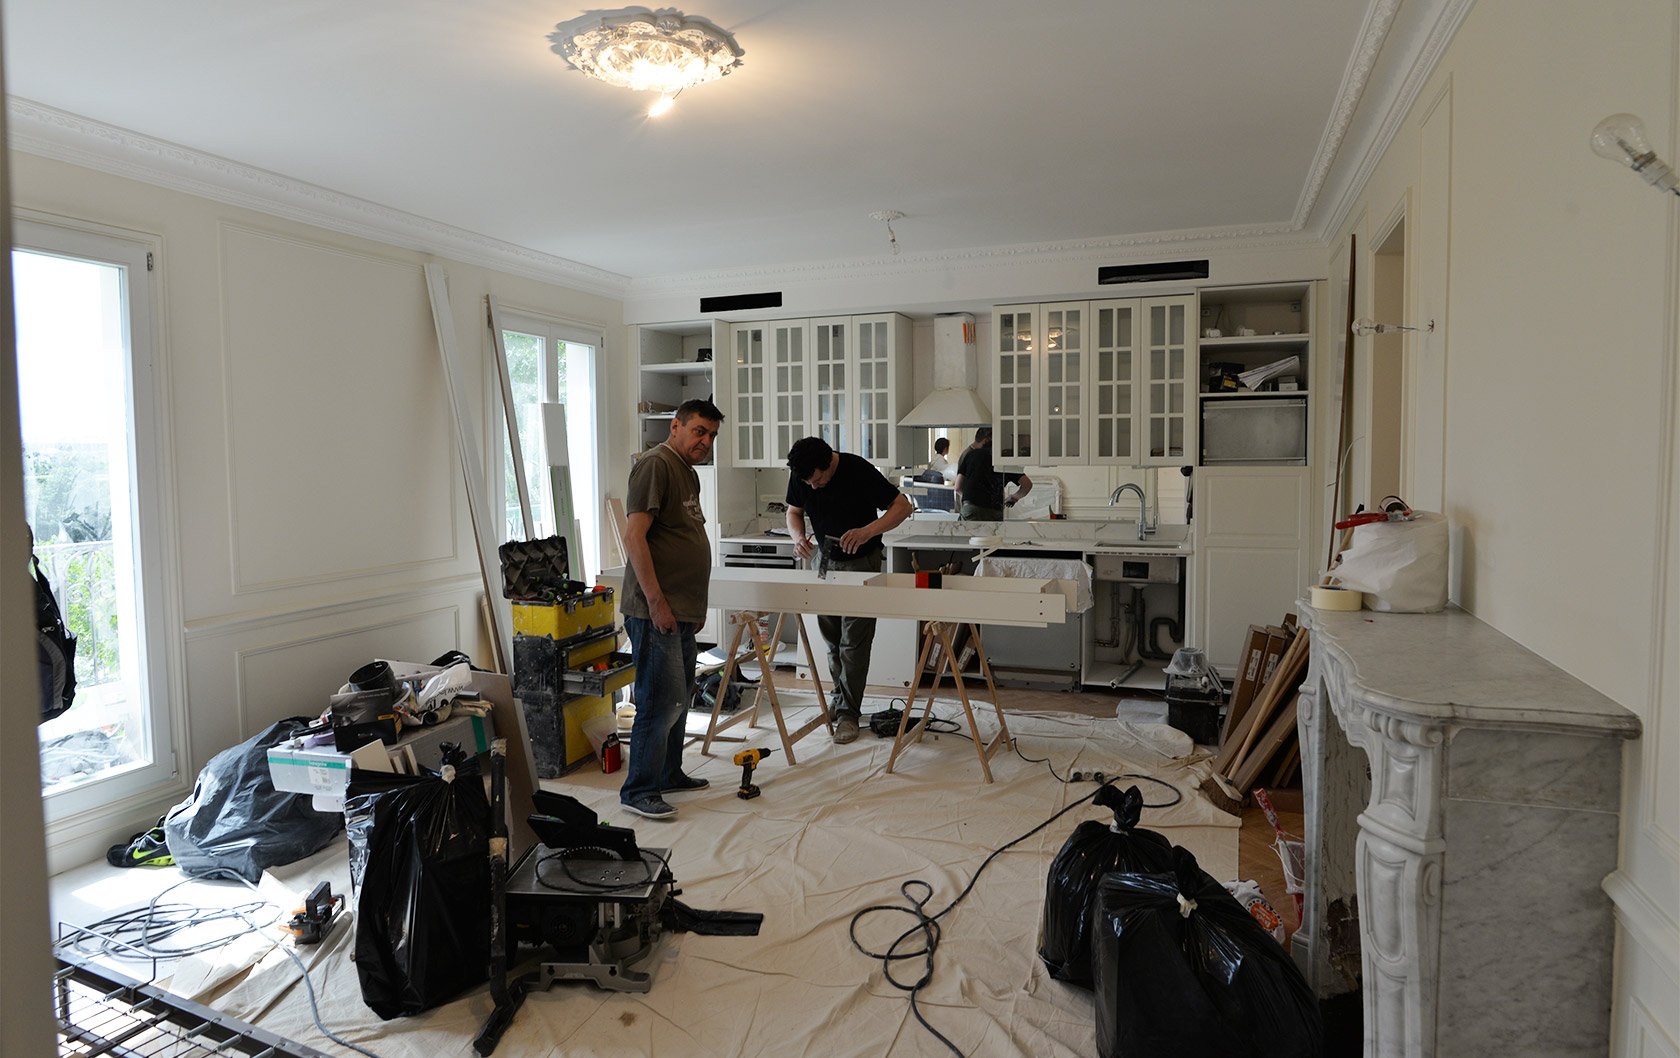 1b-Merlot-works-living-room-in-progress